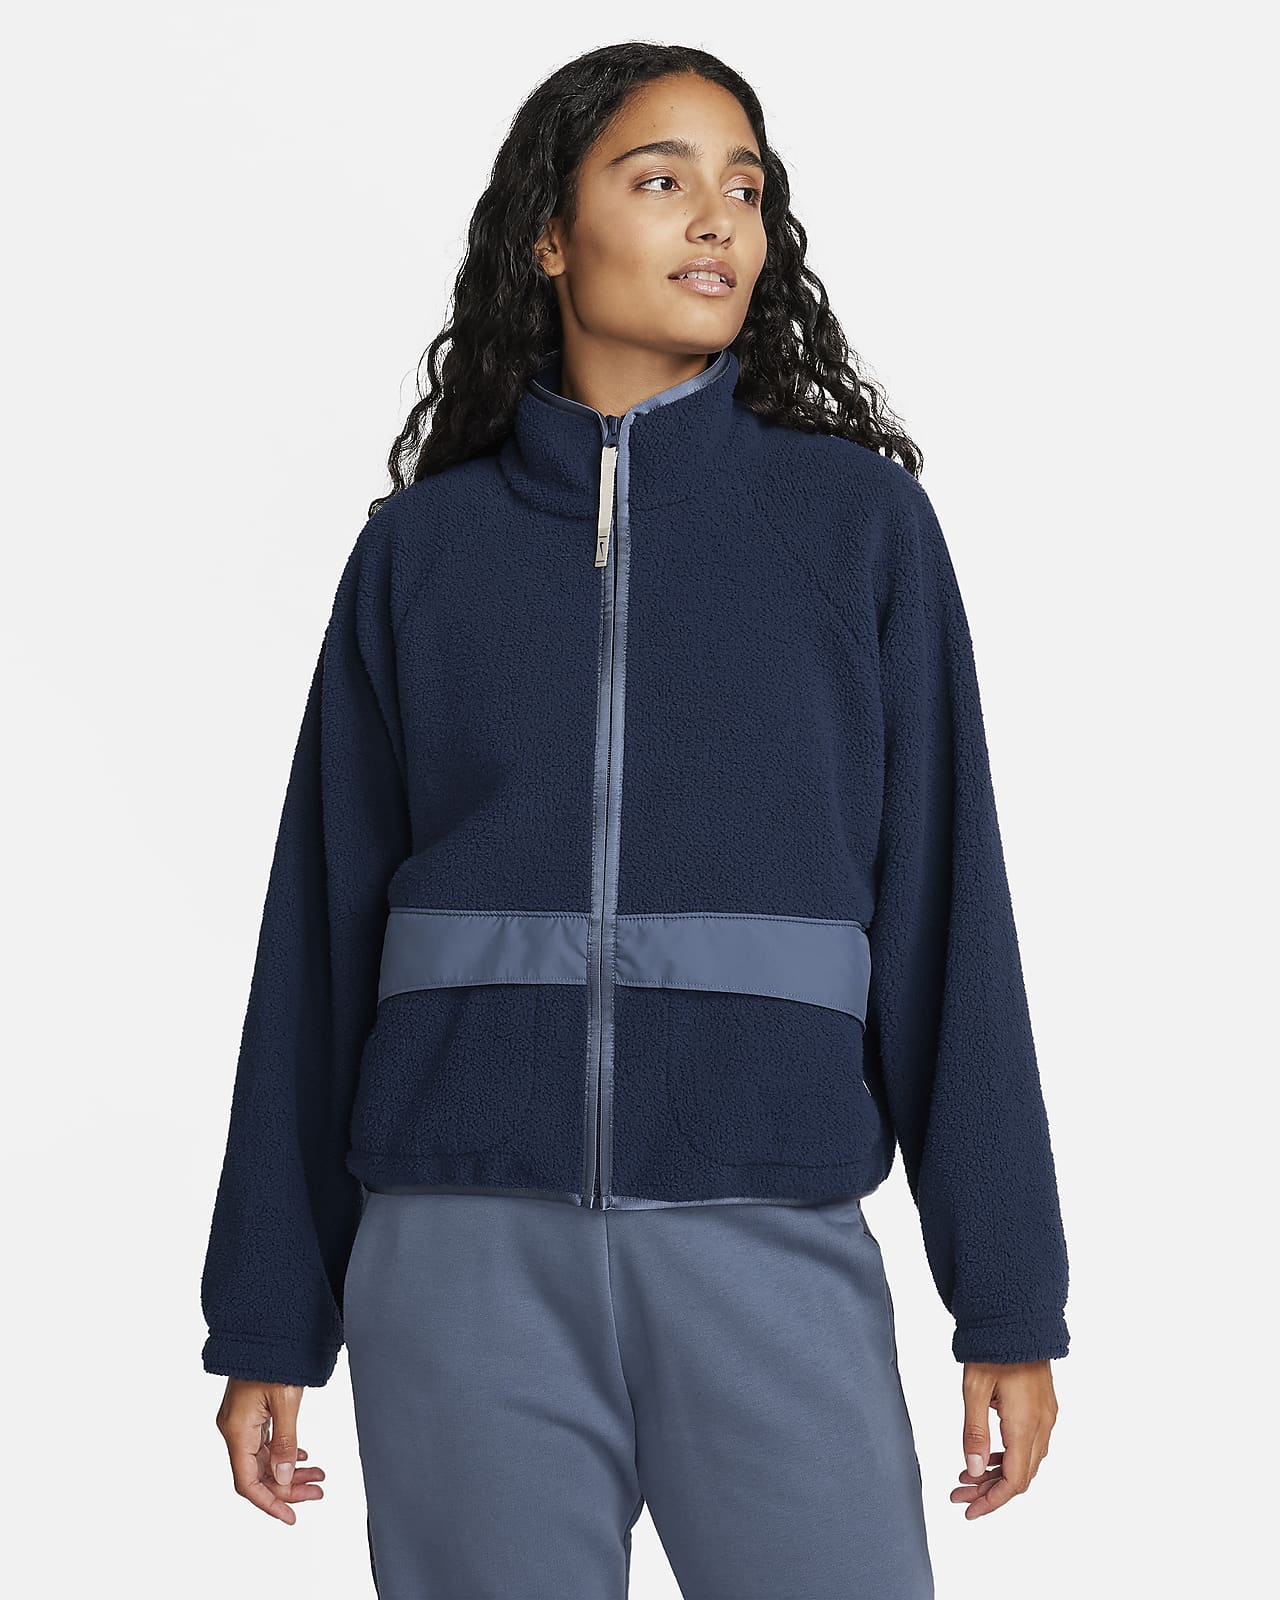 Nike Sportswear Women's High-Pile Fleece Jacket